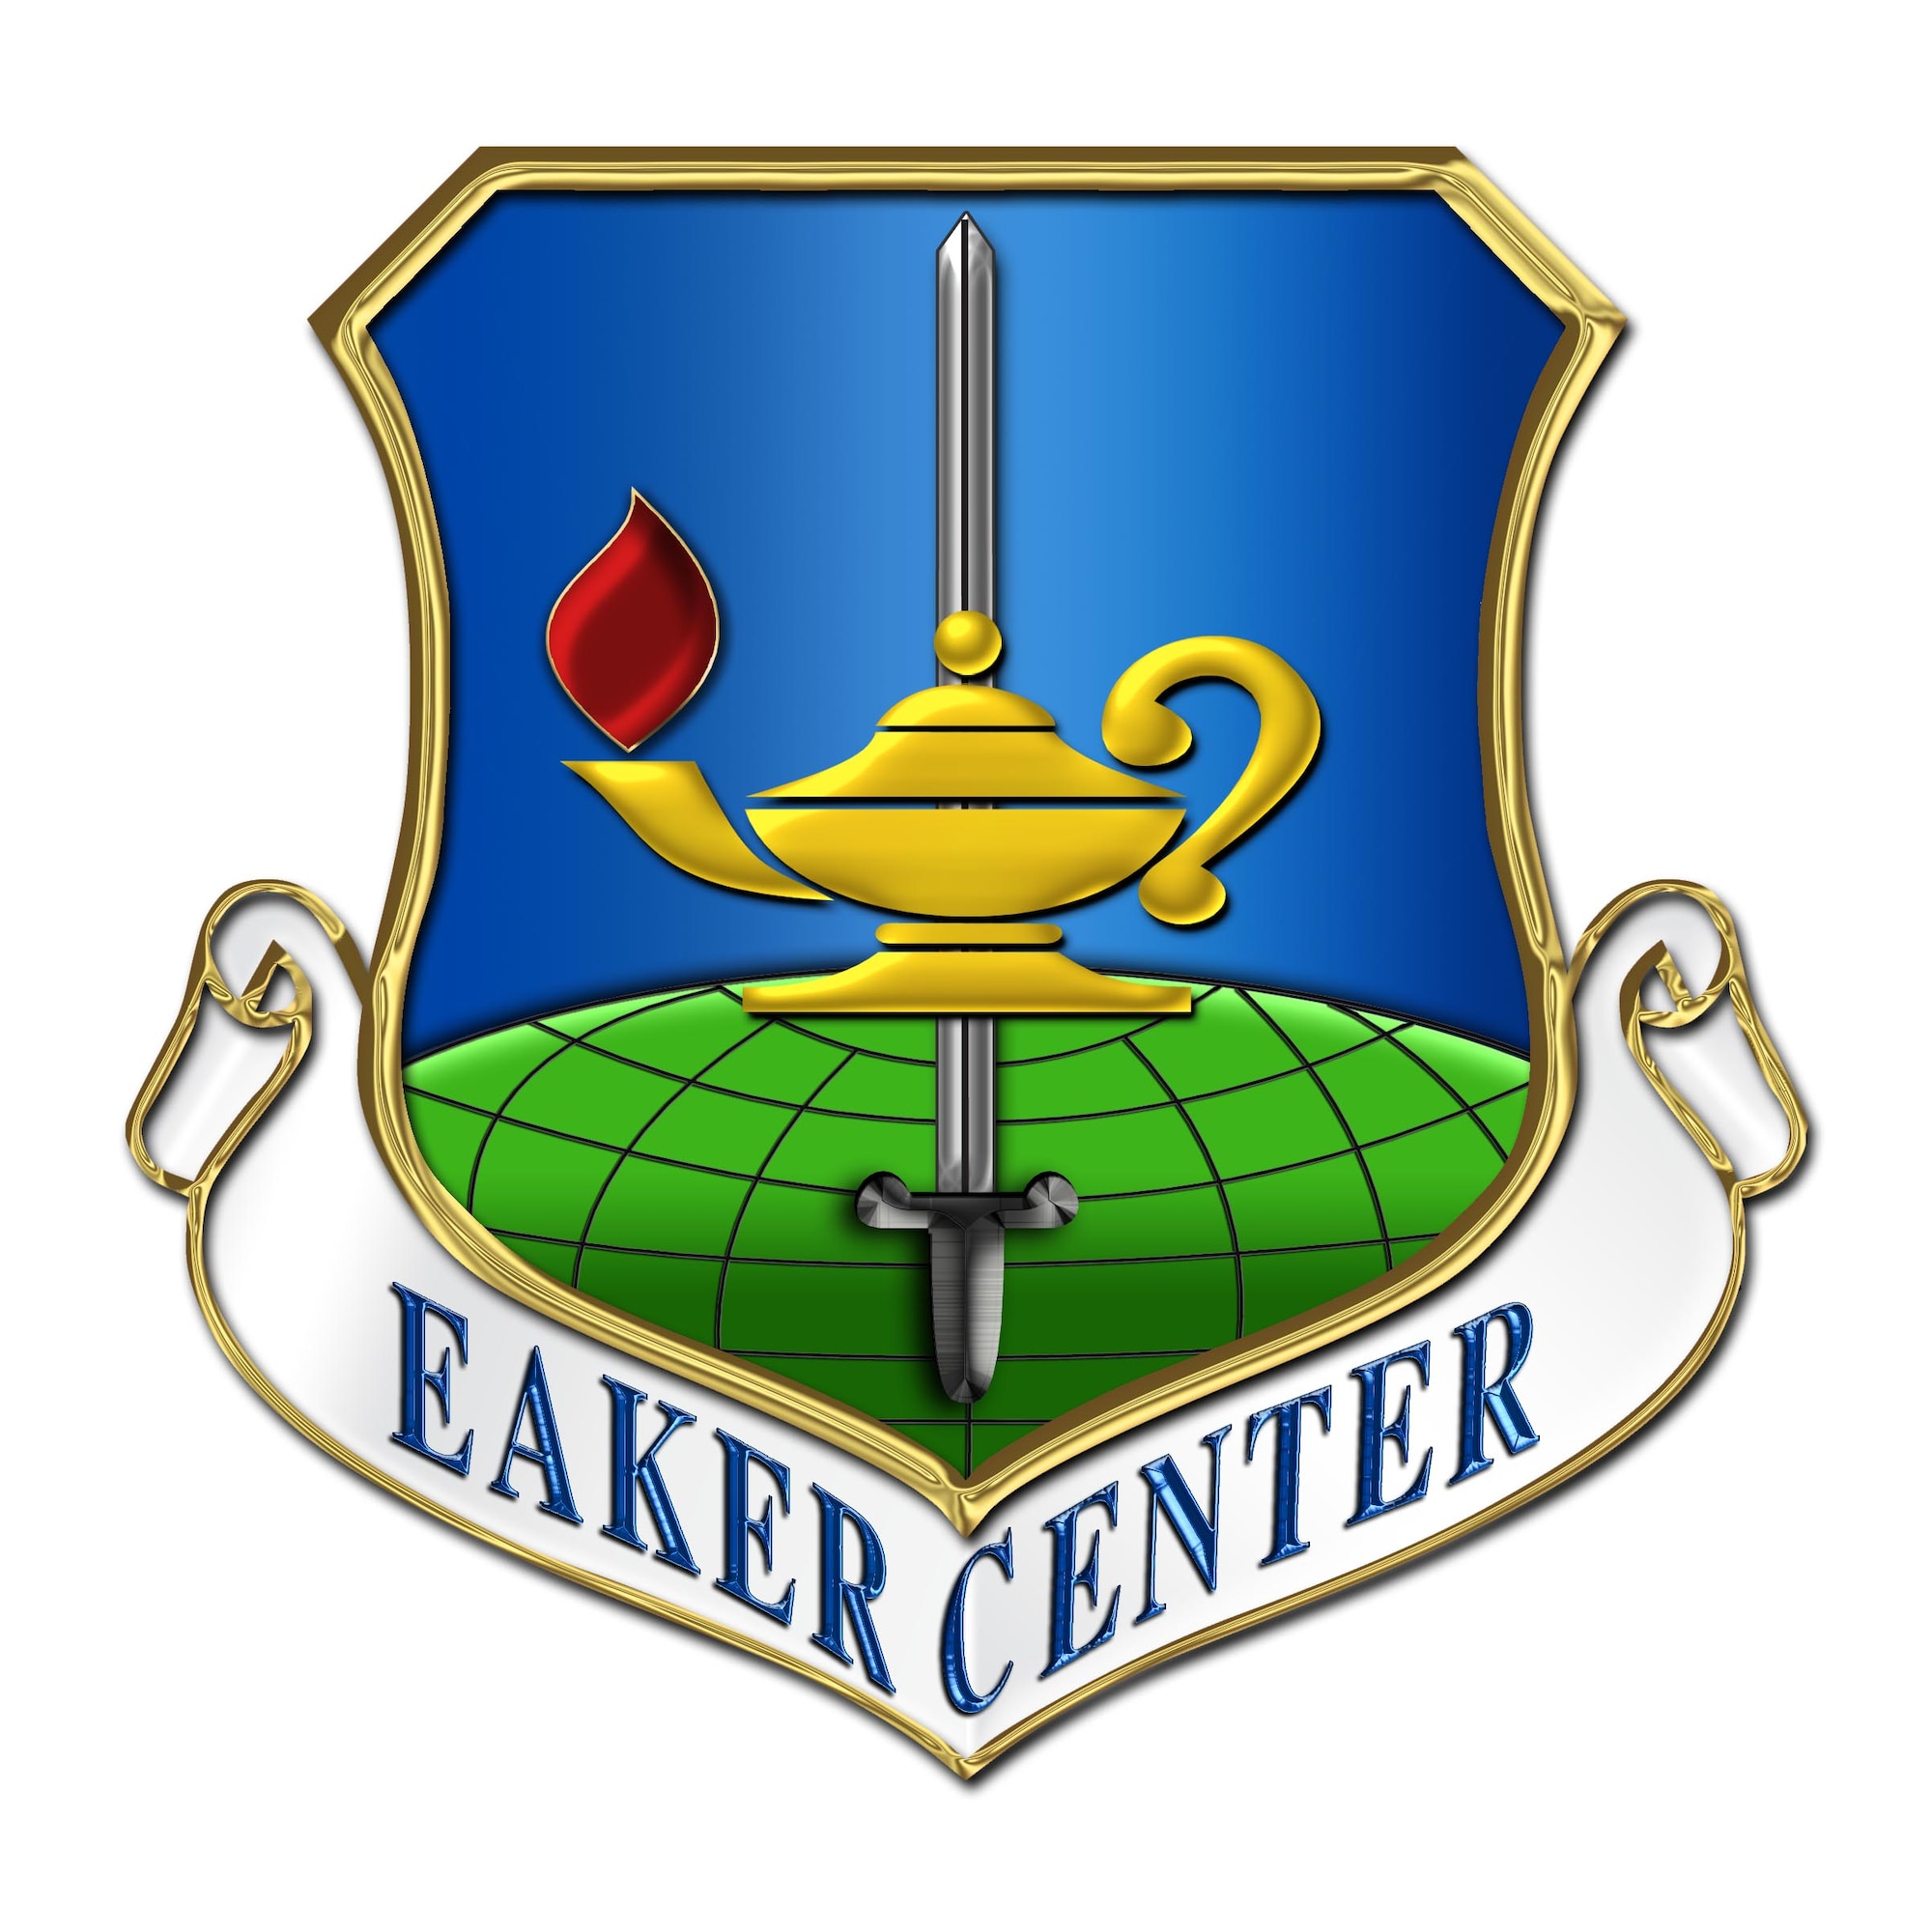 Eaker Center emblem